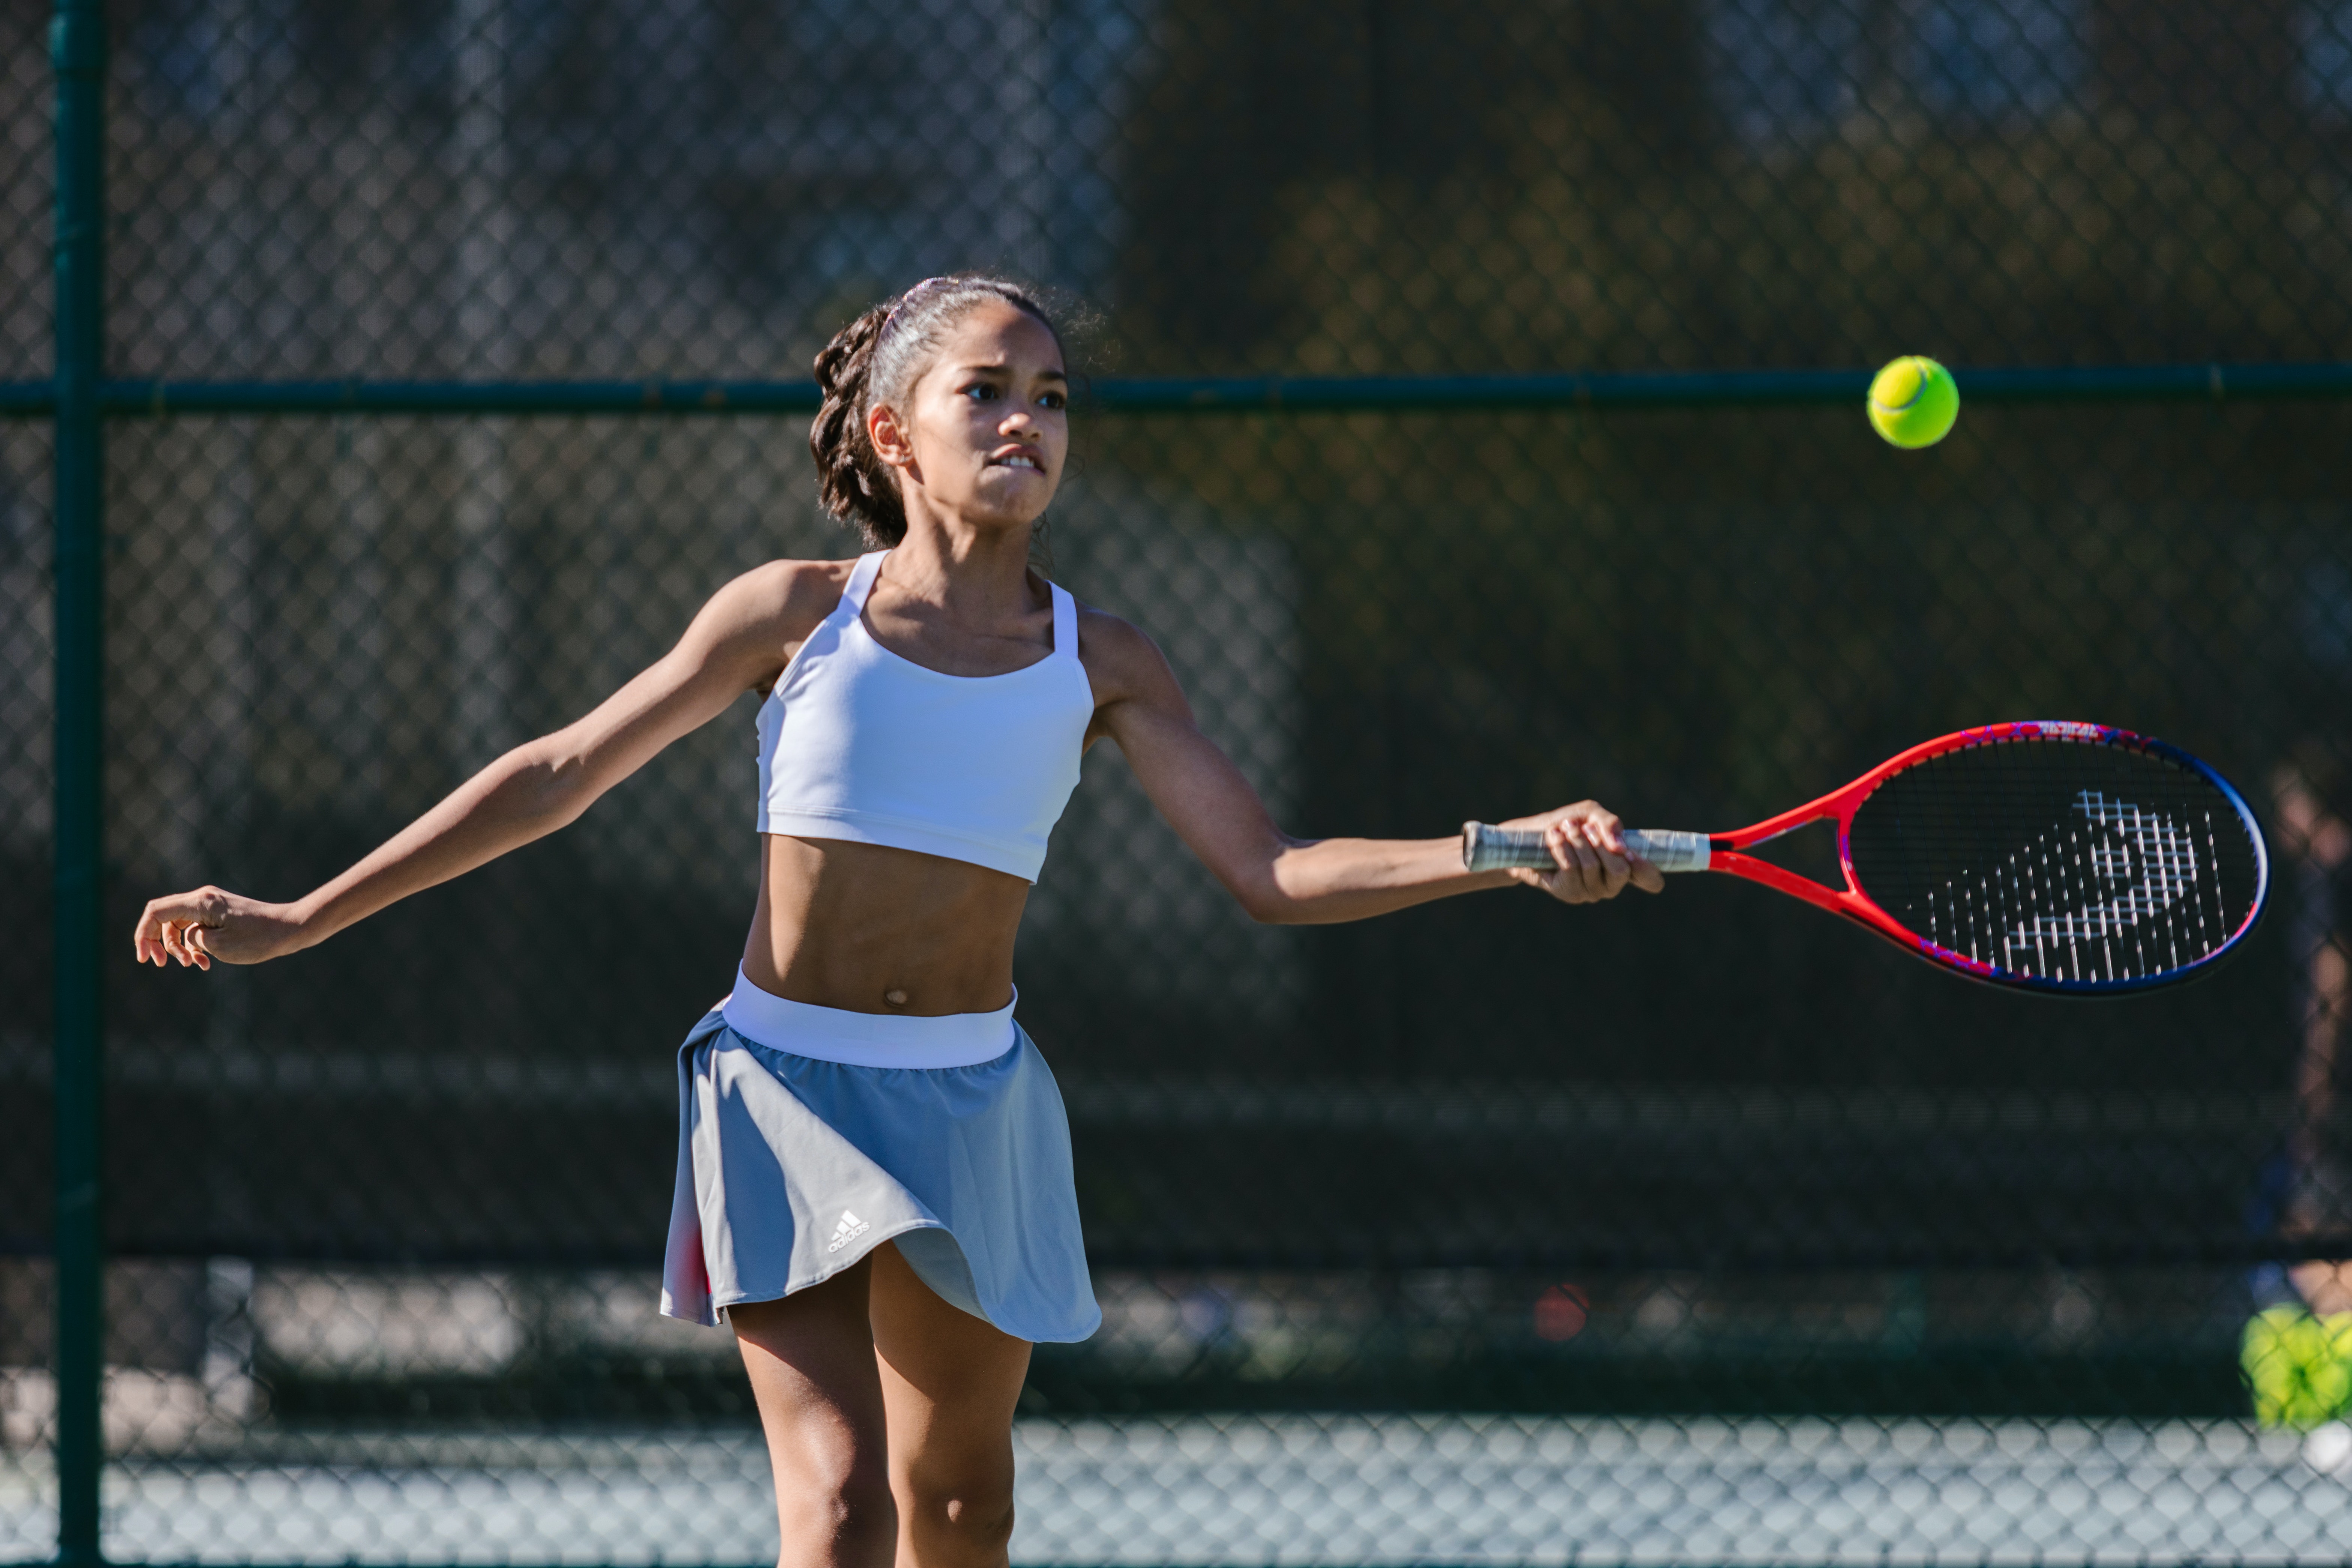 Chica golpeando una pelota de tenis con una raqueta.